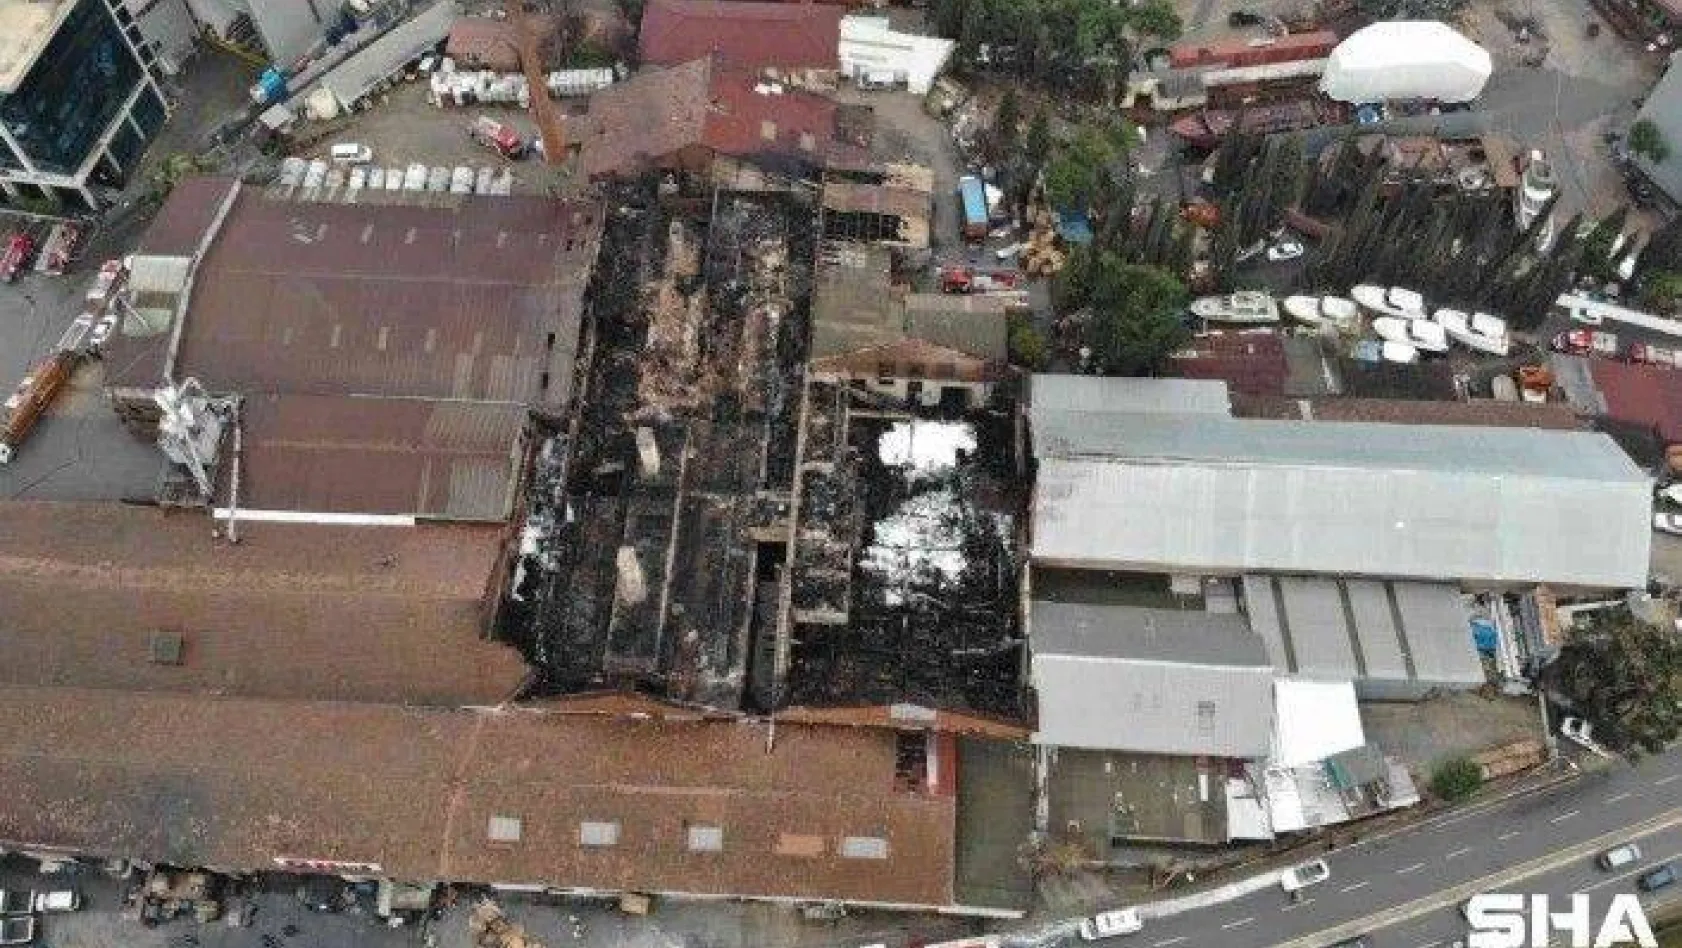 Tuzla'da yangının fabrikada bıraktığı hasar gün ağarınca ortaya çıktı